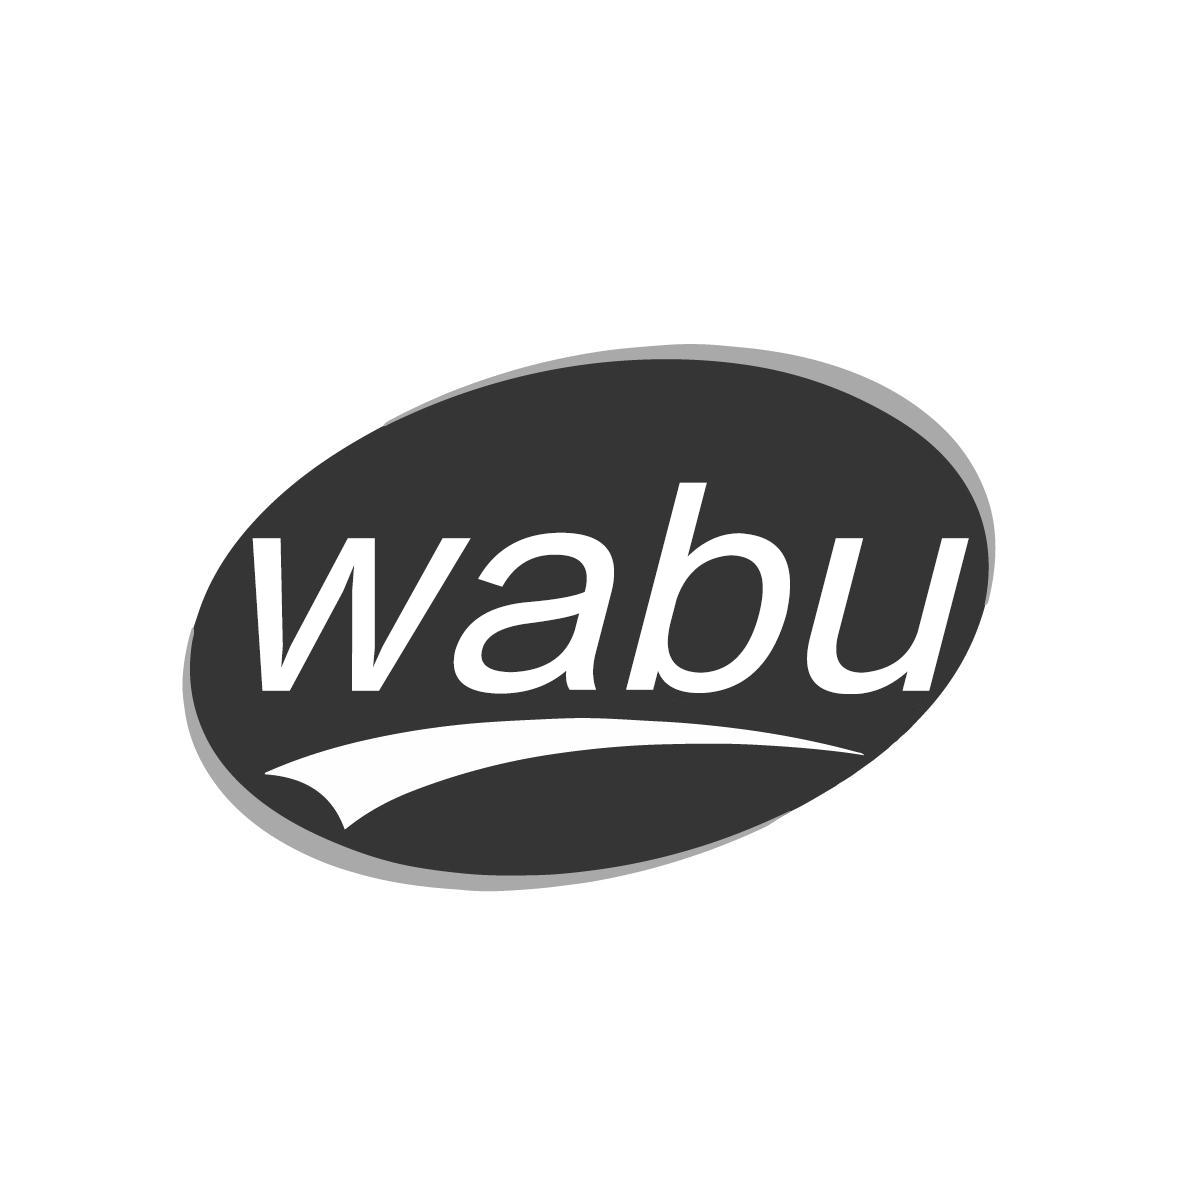 wabu